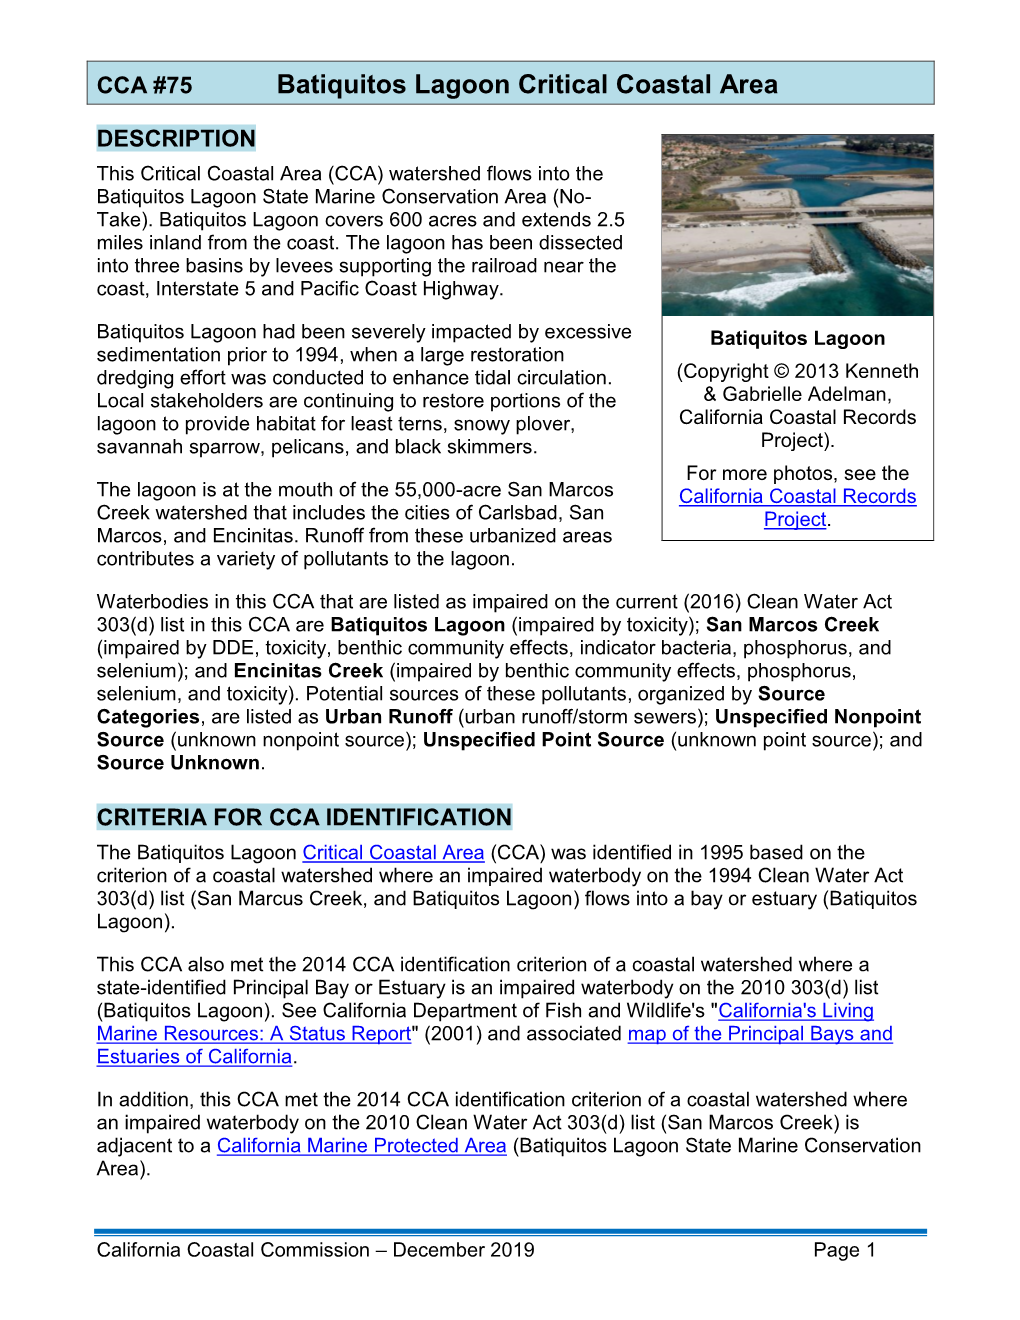 Batiquitos Lagoon CCA Factsheet 2019